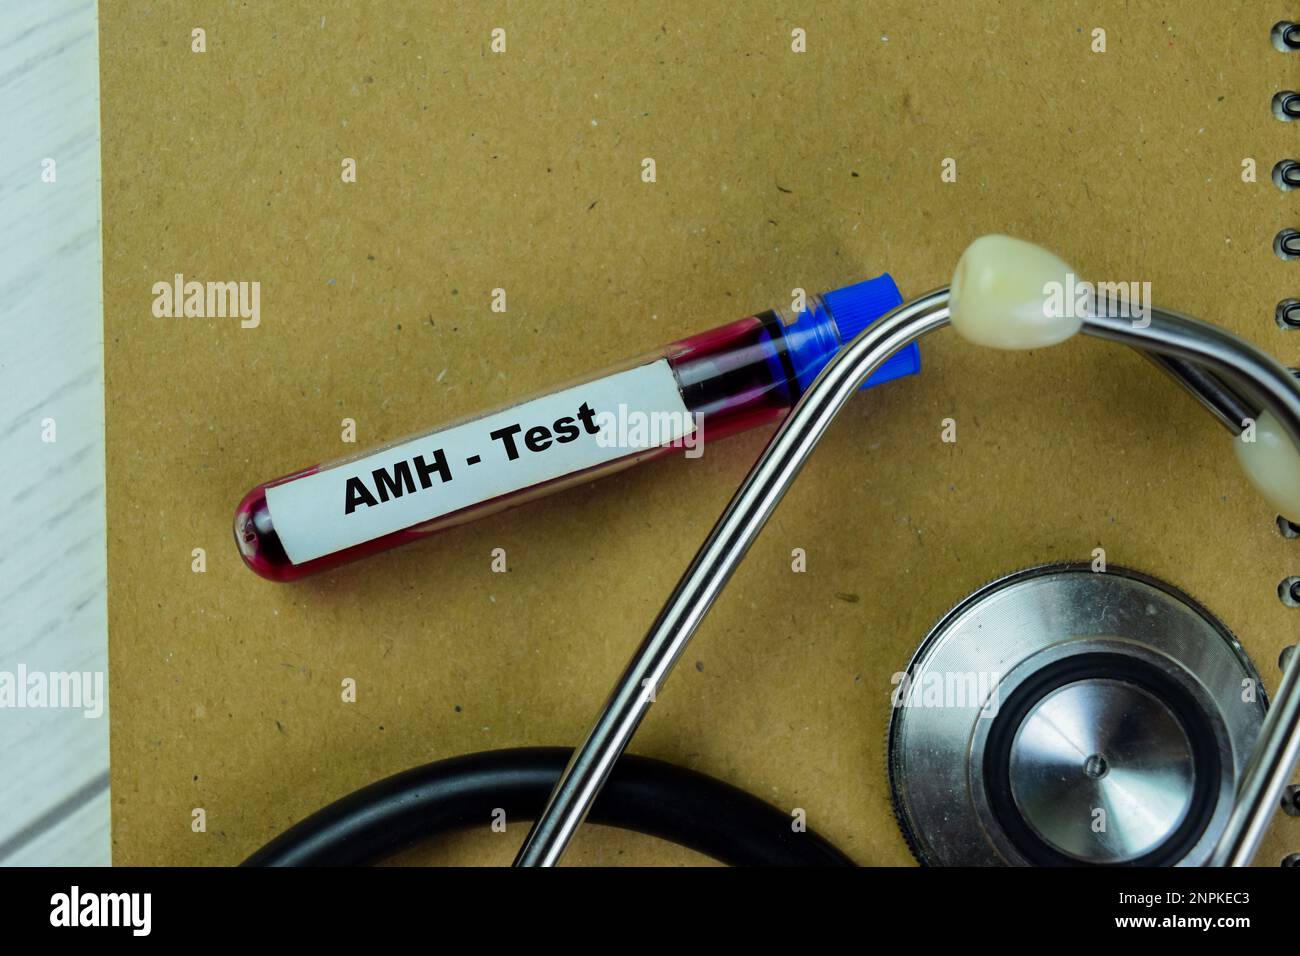 Konzept des AMH - Test mit Blutprobe. Gesundheitsfürsorge oder medizinisches Konzept Stockfoto